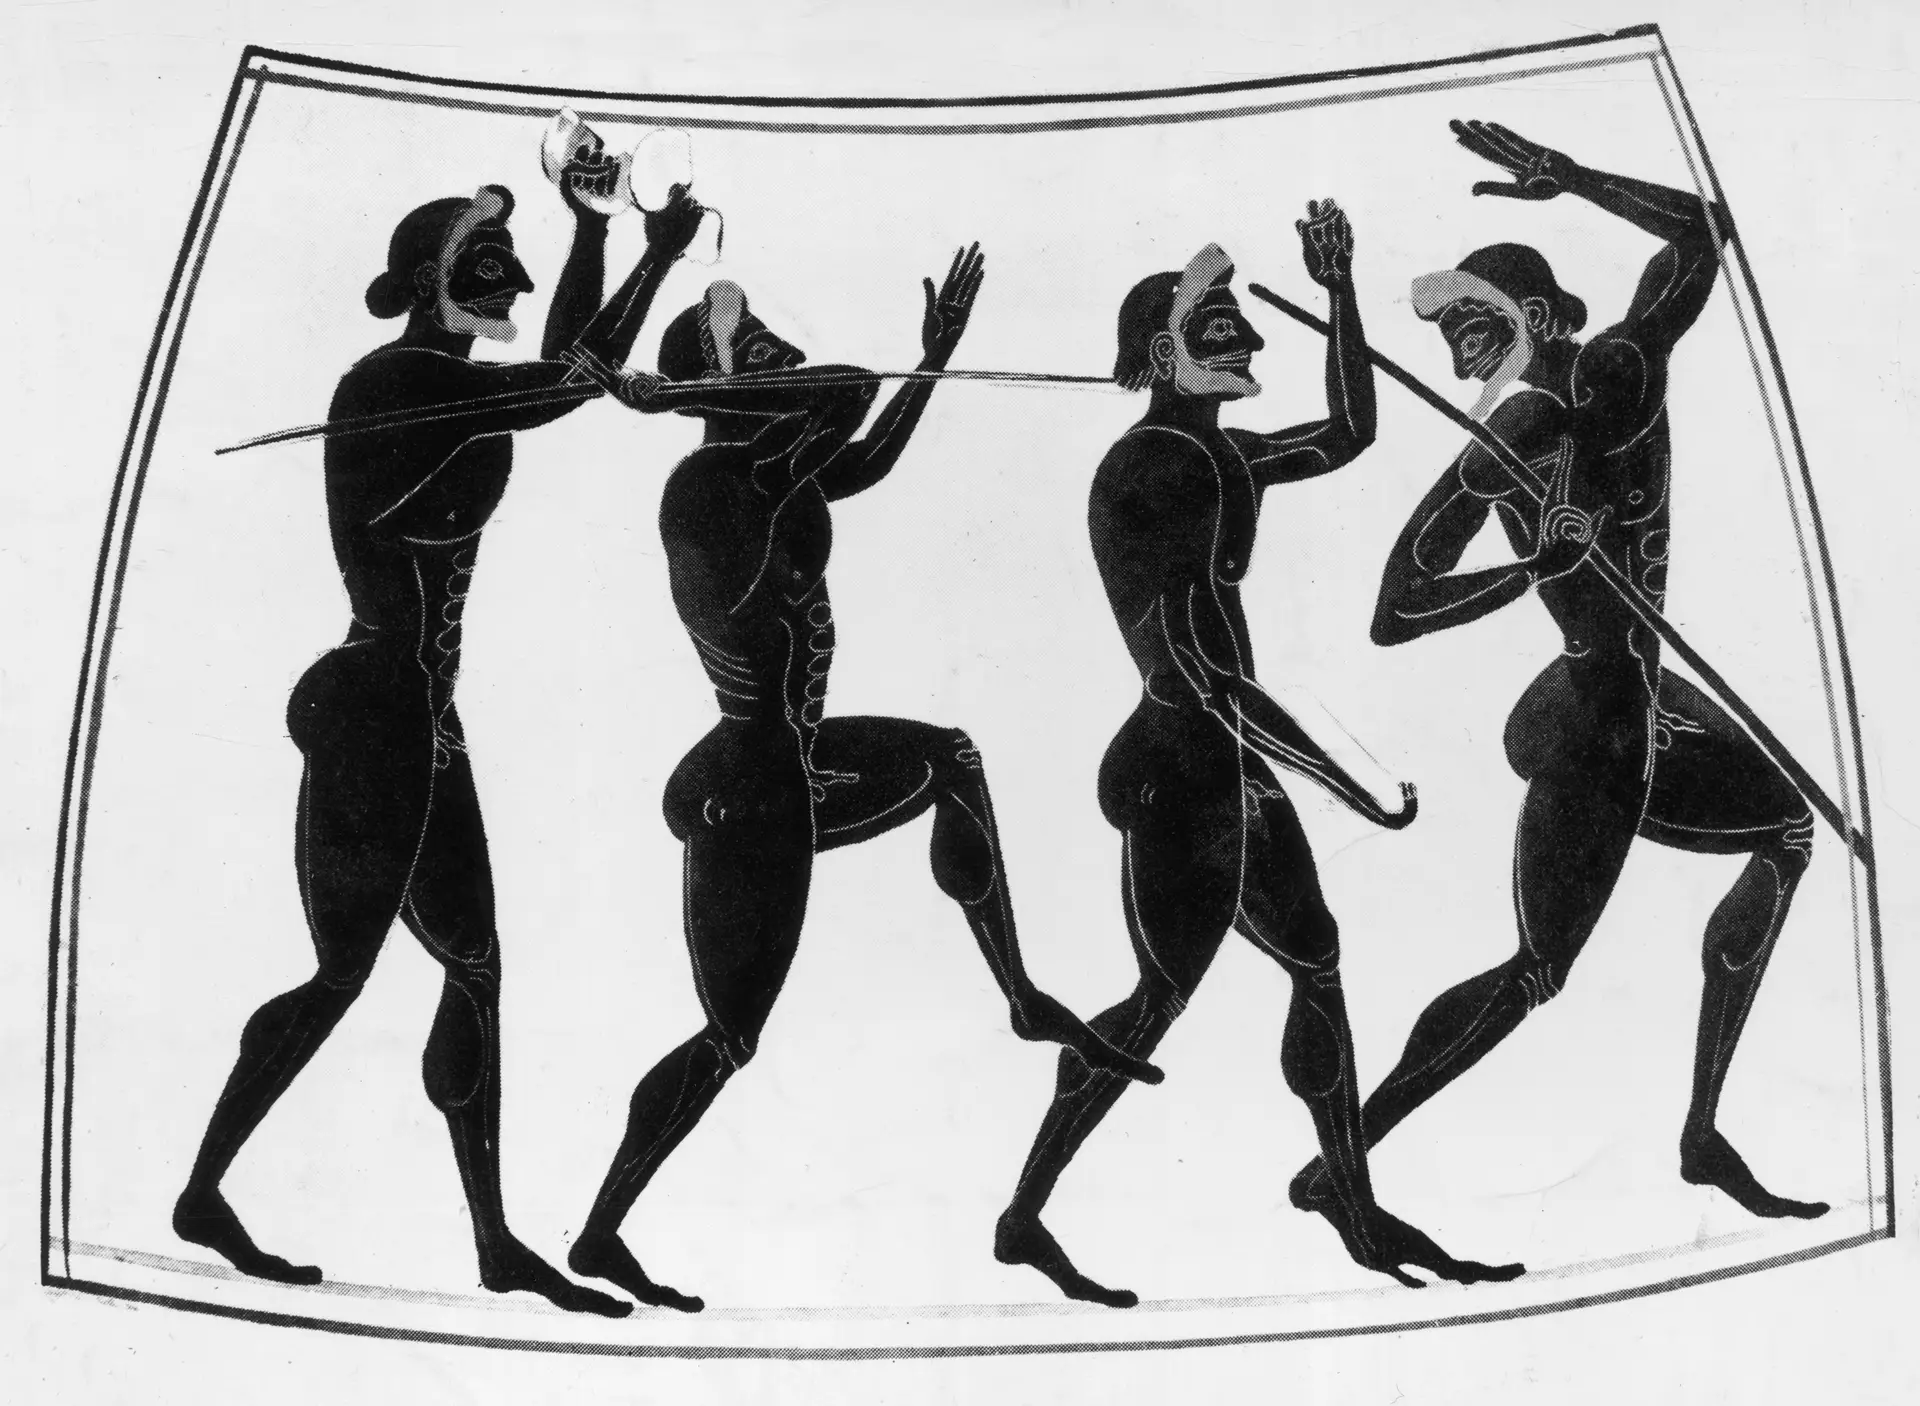 Atletas nus e coroas de louros: como eram os Jogos Olímpicos originais